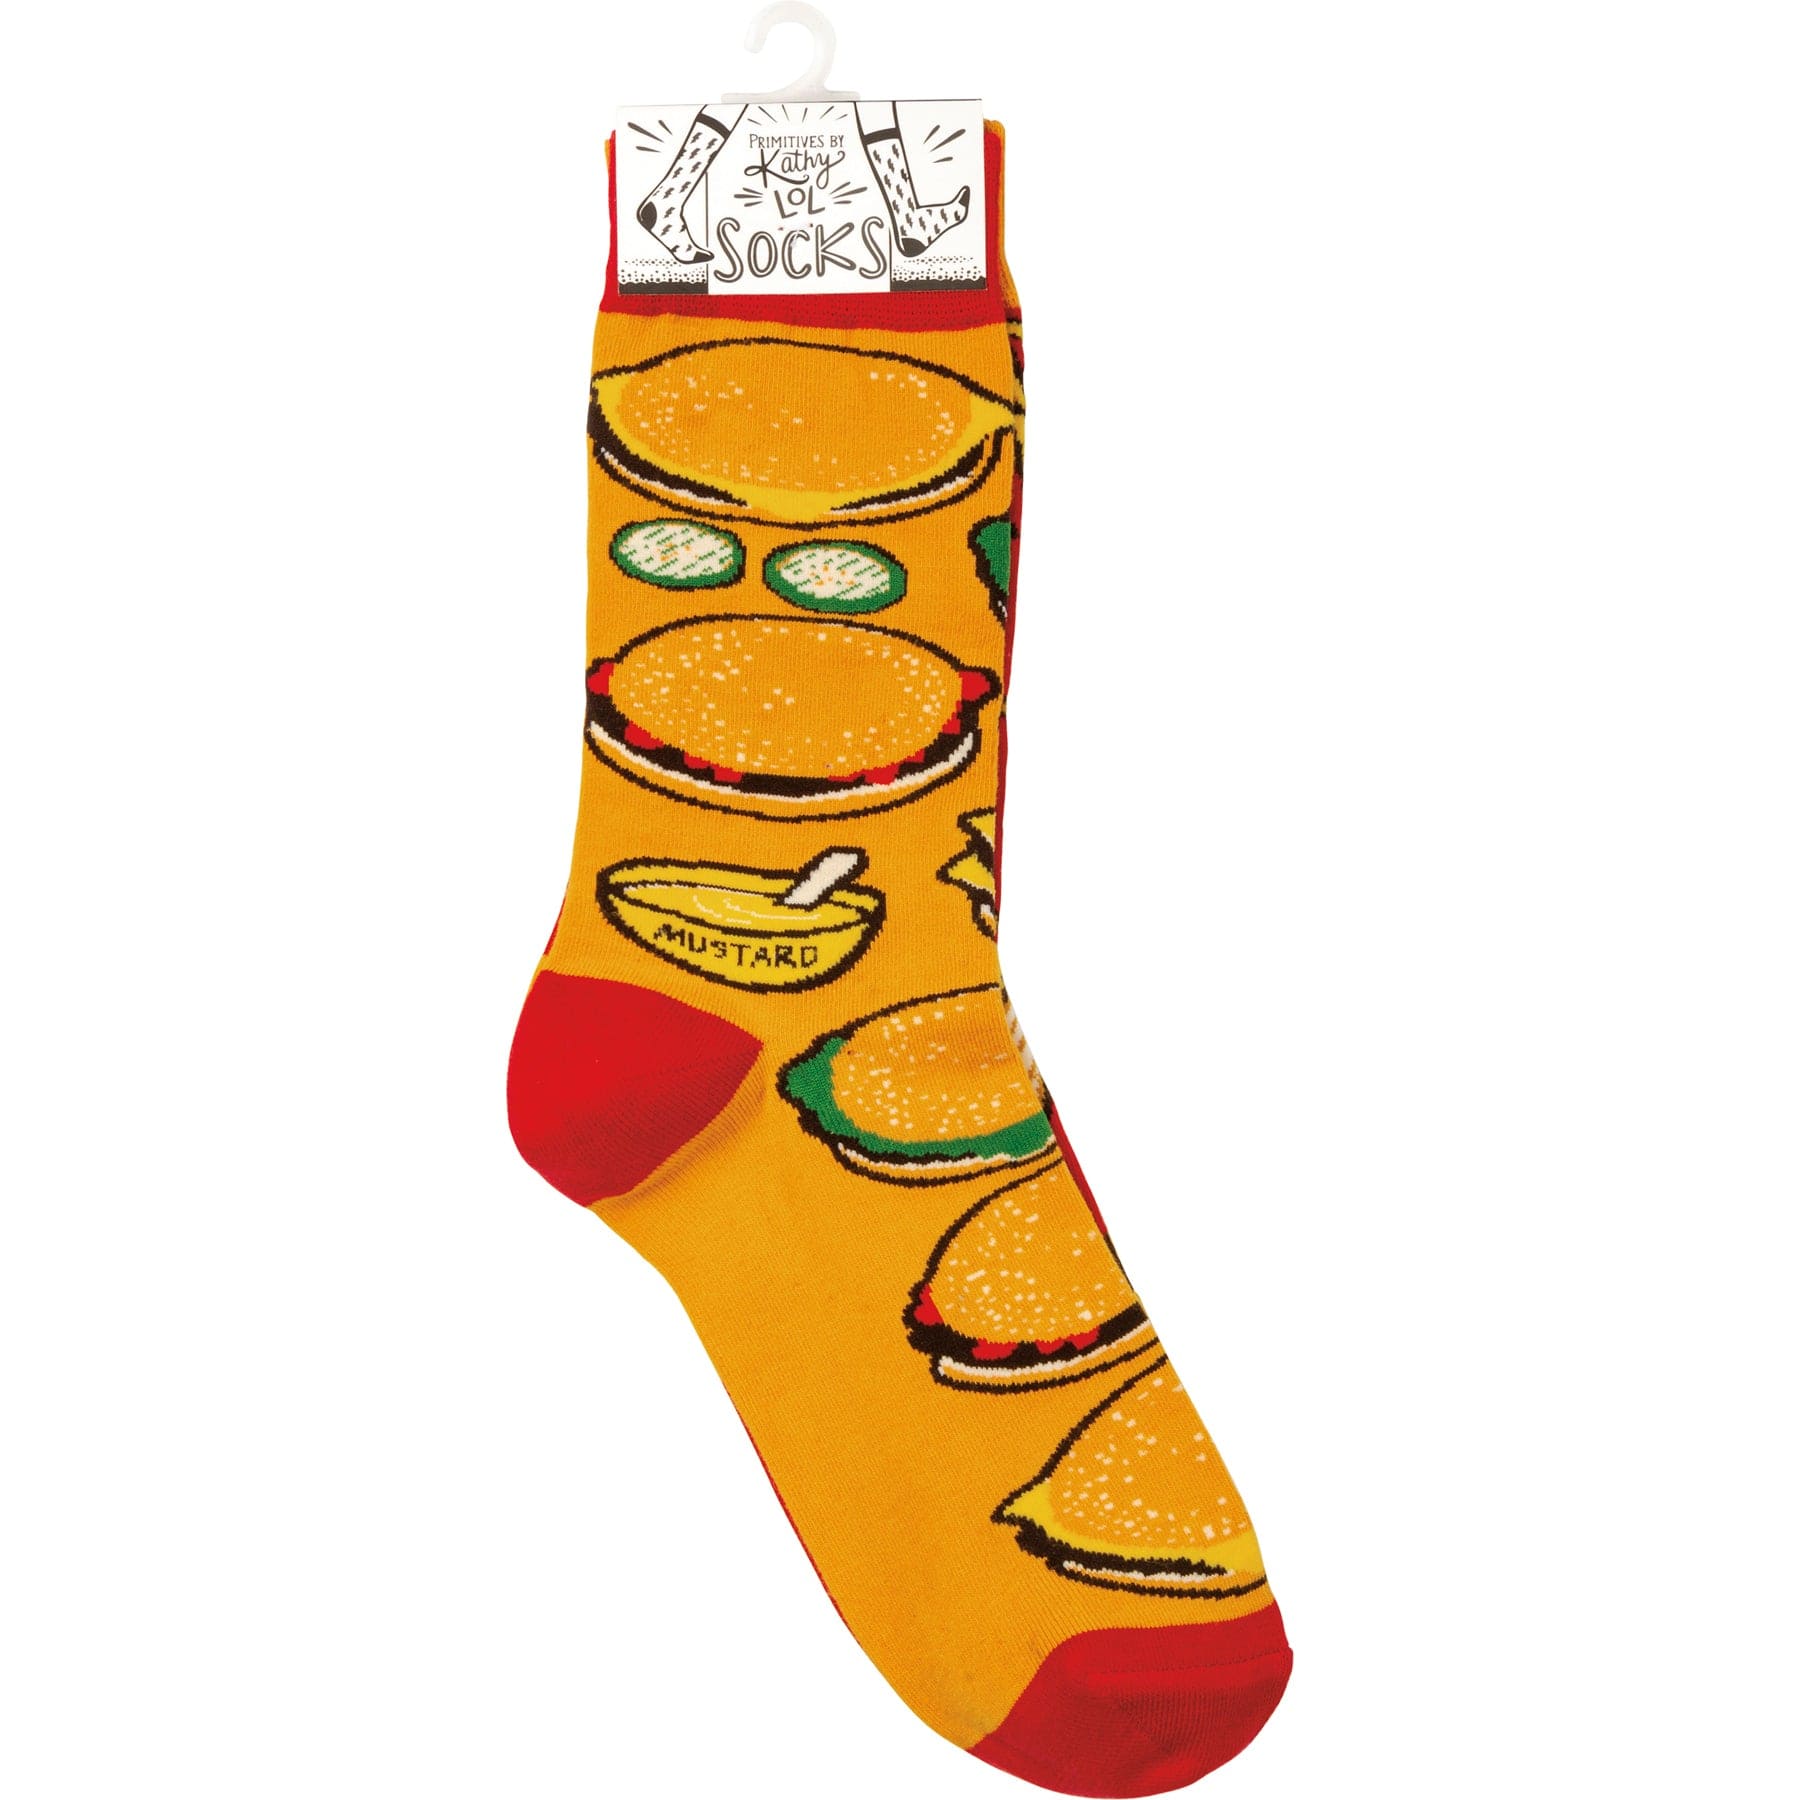 Socks One Size Fits Most Socks - Burgers & Fries PBK-107883